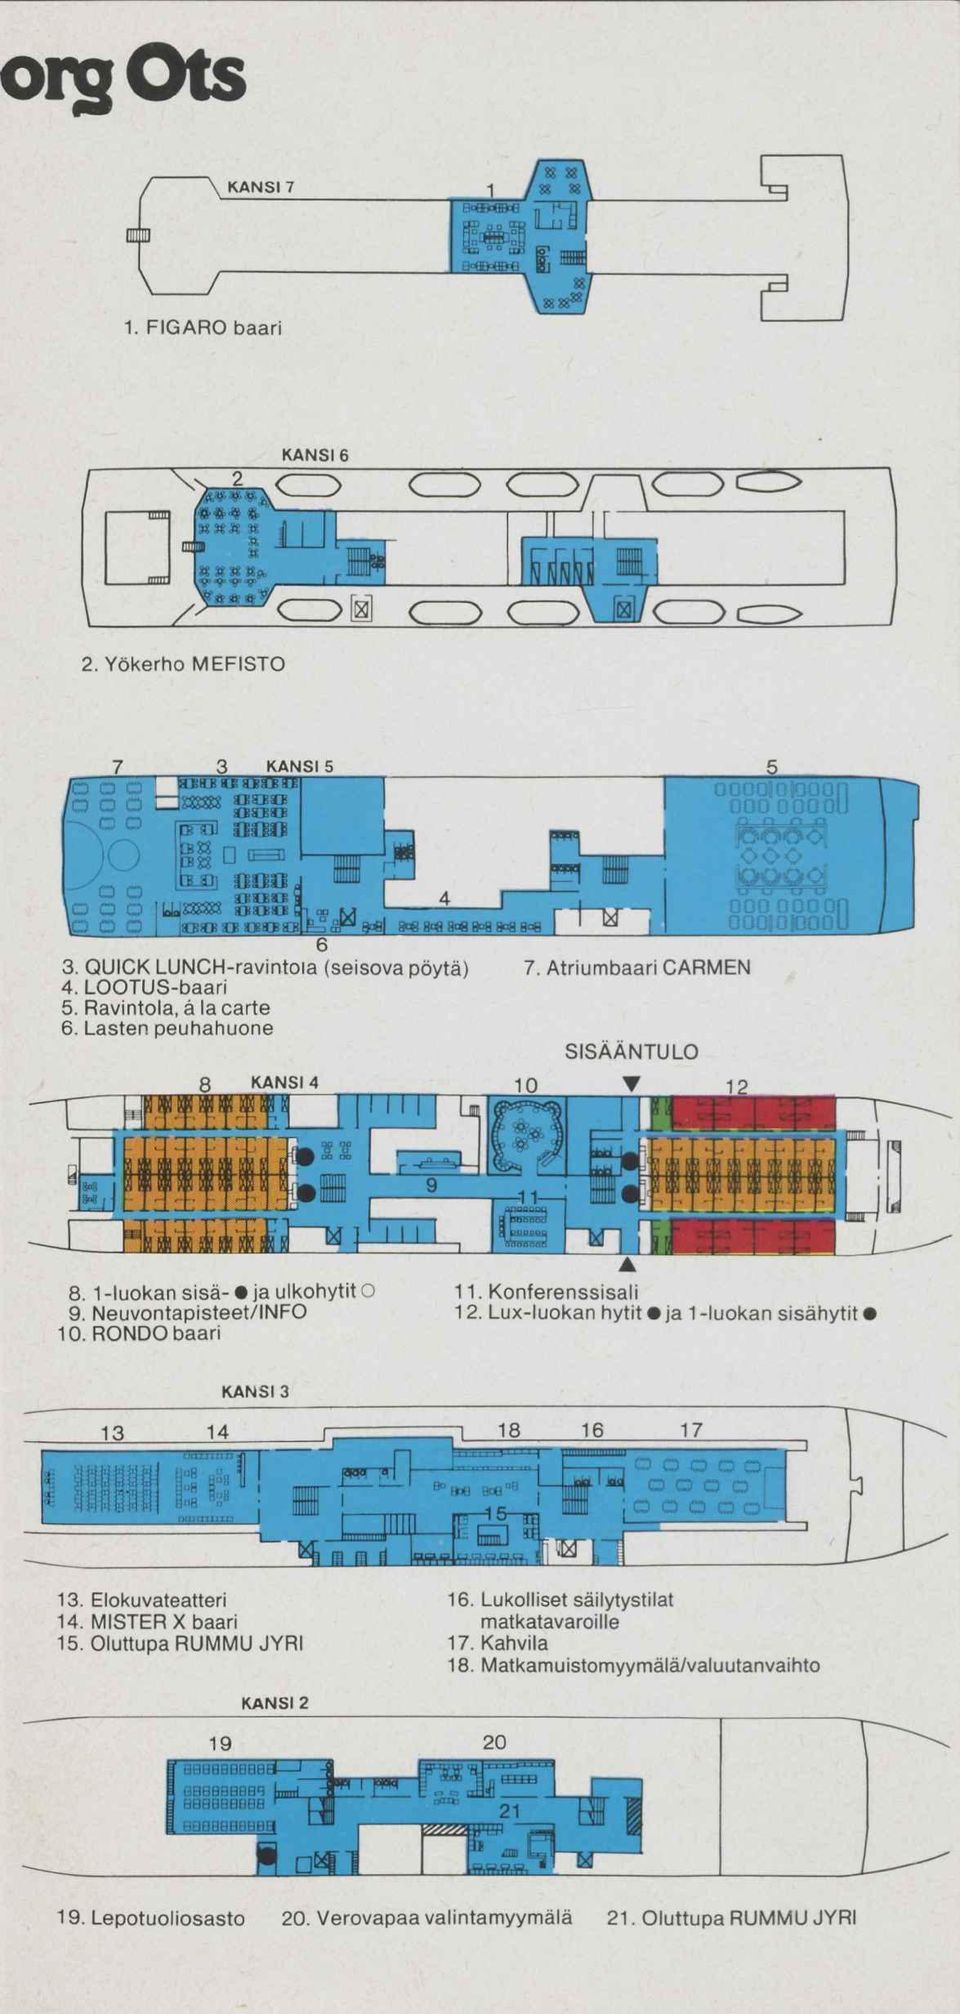 Atriumbaari CARMEN SISÄÄNTULO 83В'8В880 ^SÕol žssy 888,8В880 J. 8. 1 -luokan sise- ja ulkohytit О 11. Konferenssisali 9. Neuvontapisteet/INFO 12.